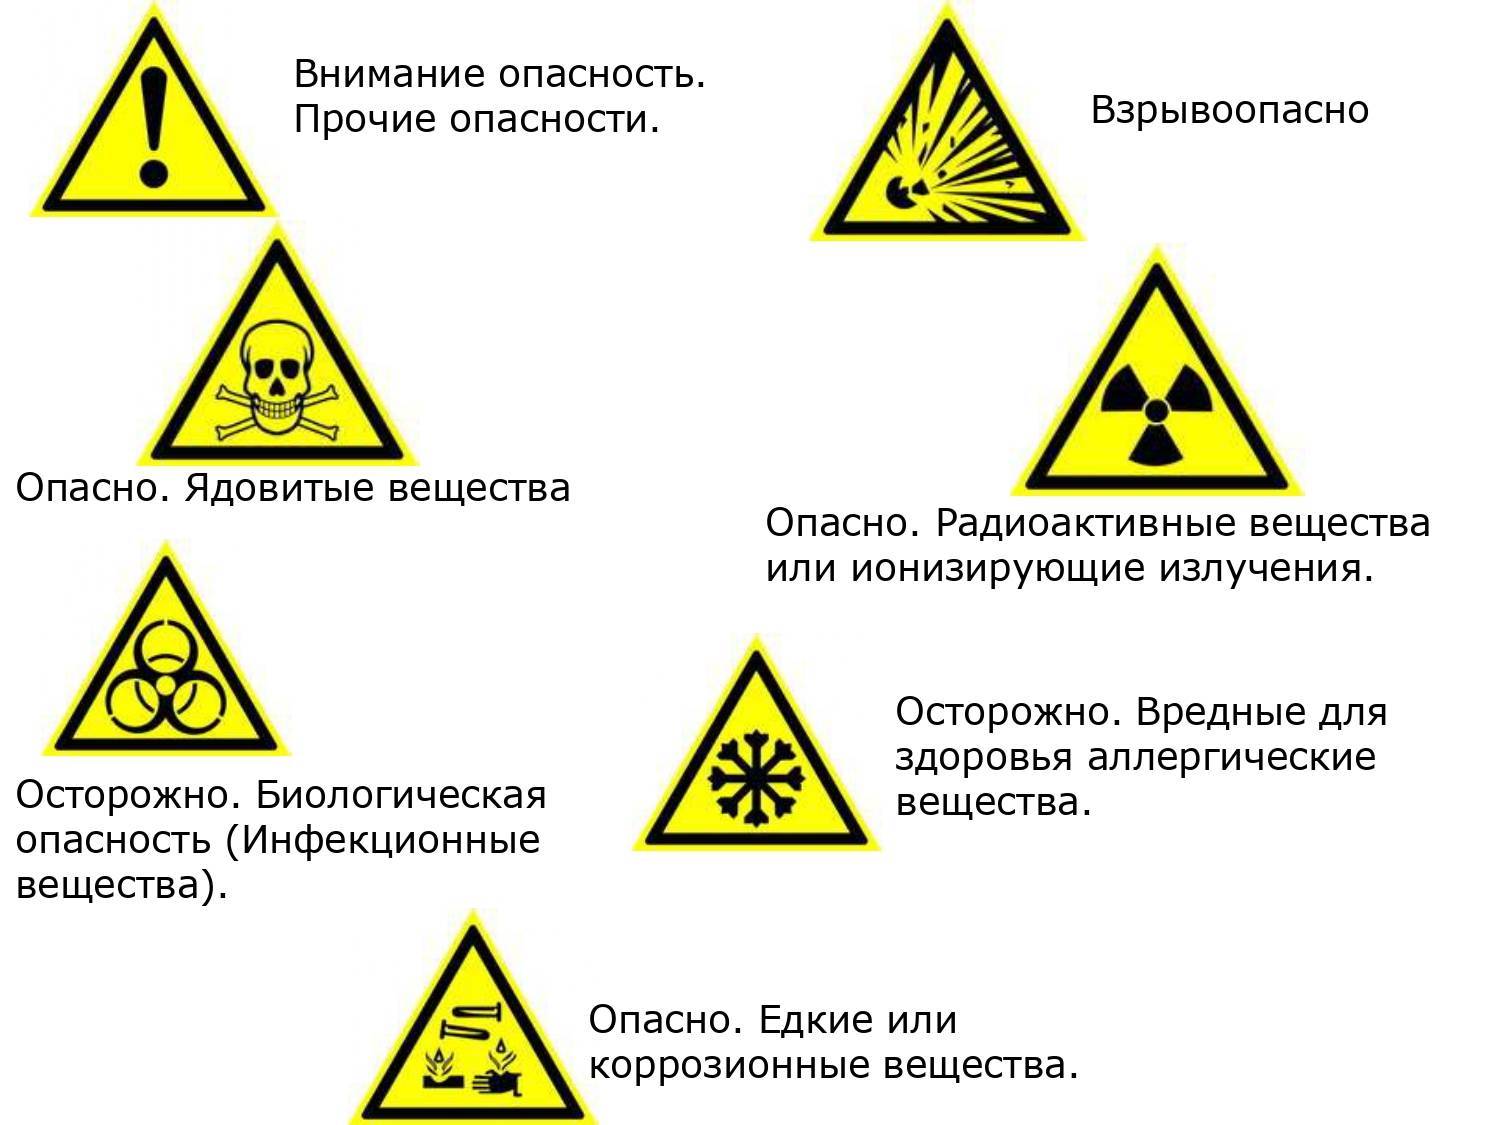 5 ответов на вопросы о радиации, появившиеся после «чернобыля»